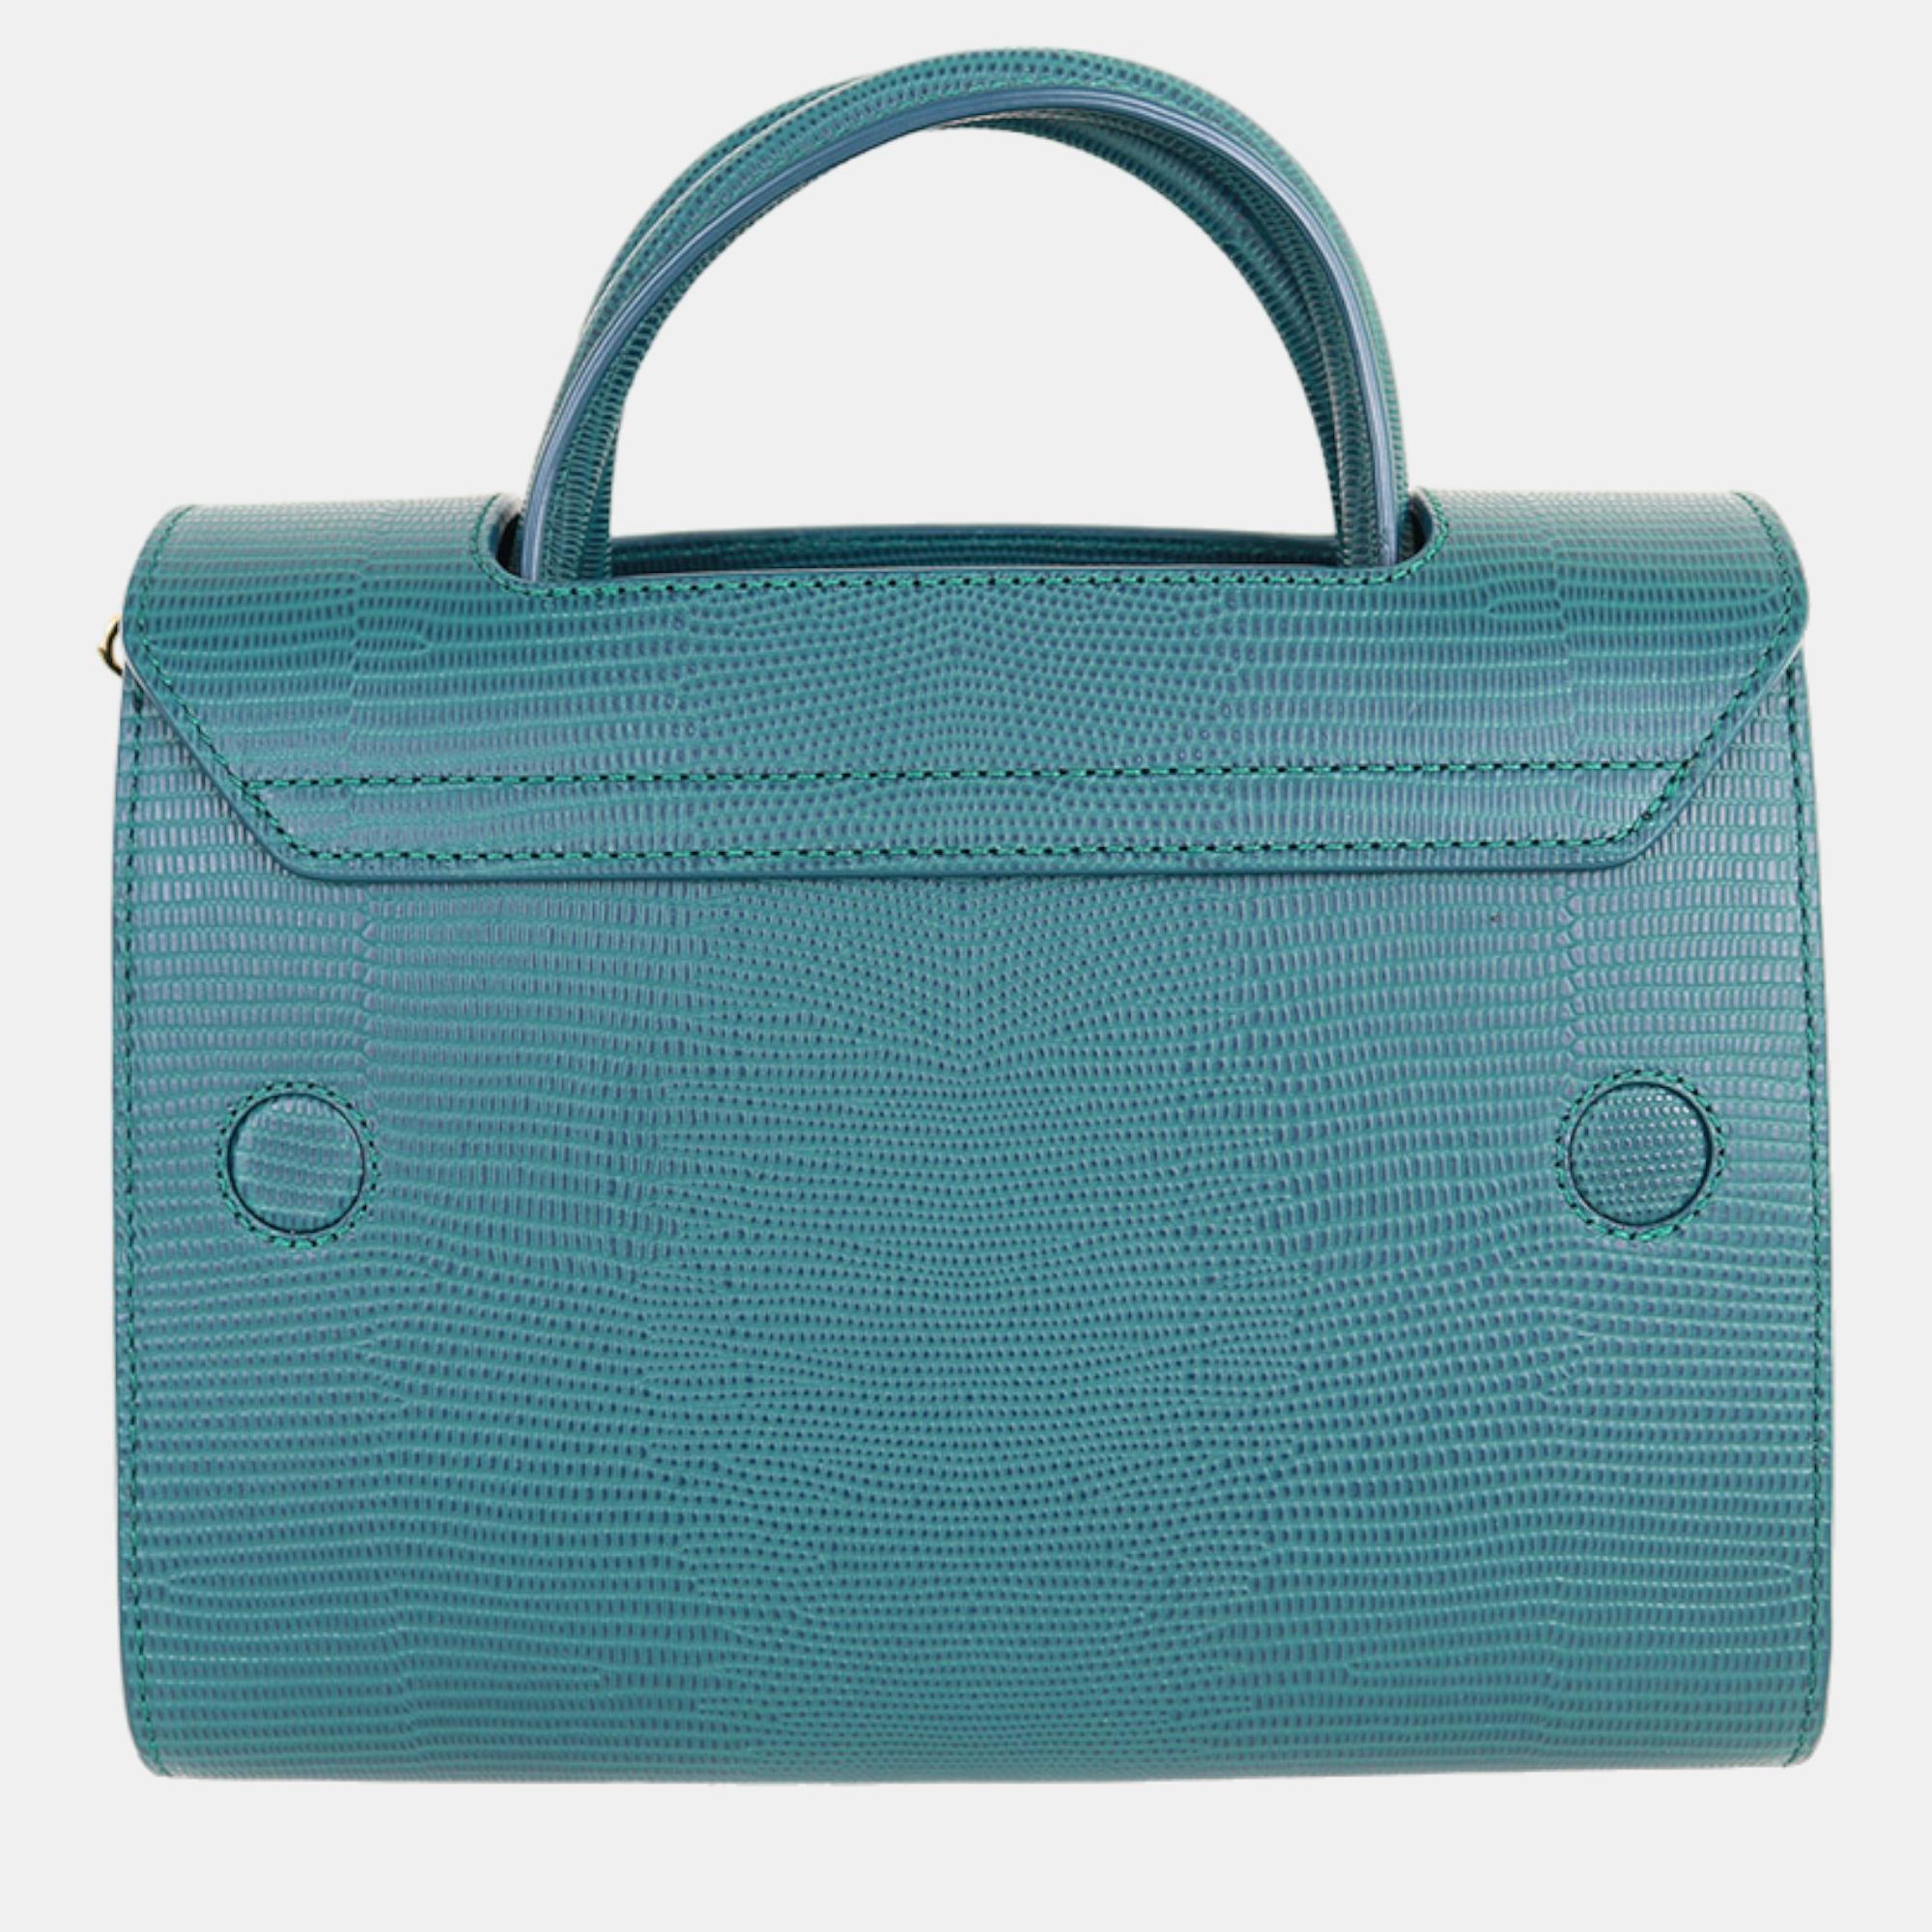 Charriol Green Leather Chameleon Handbag